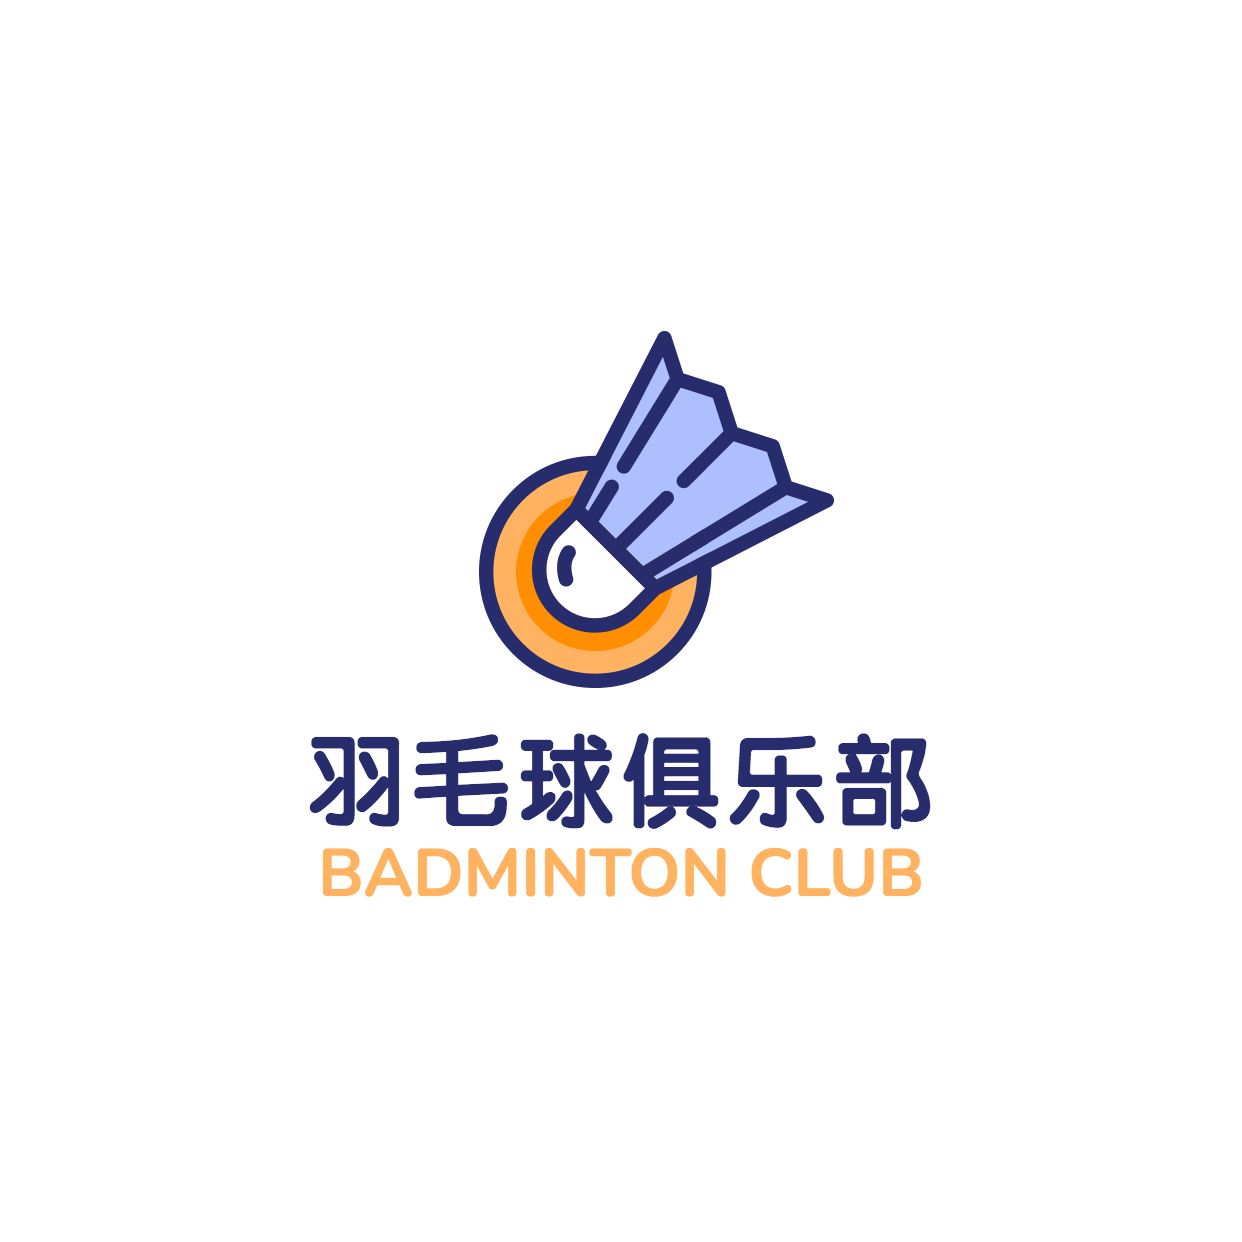 羽毛球俱乐部培训头像logo预览效果